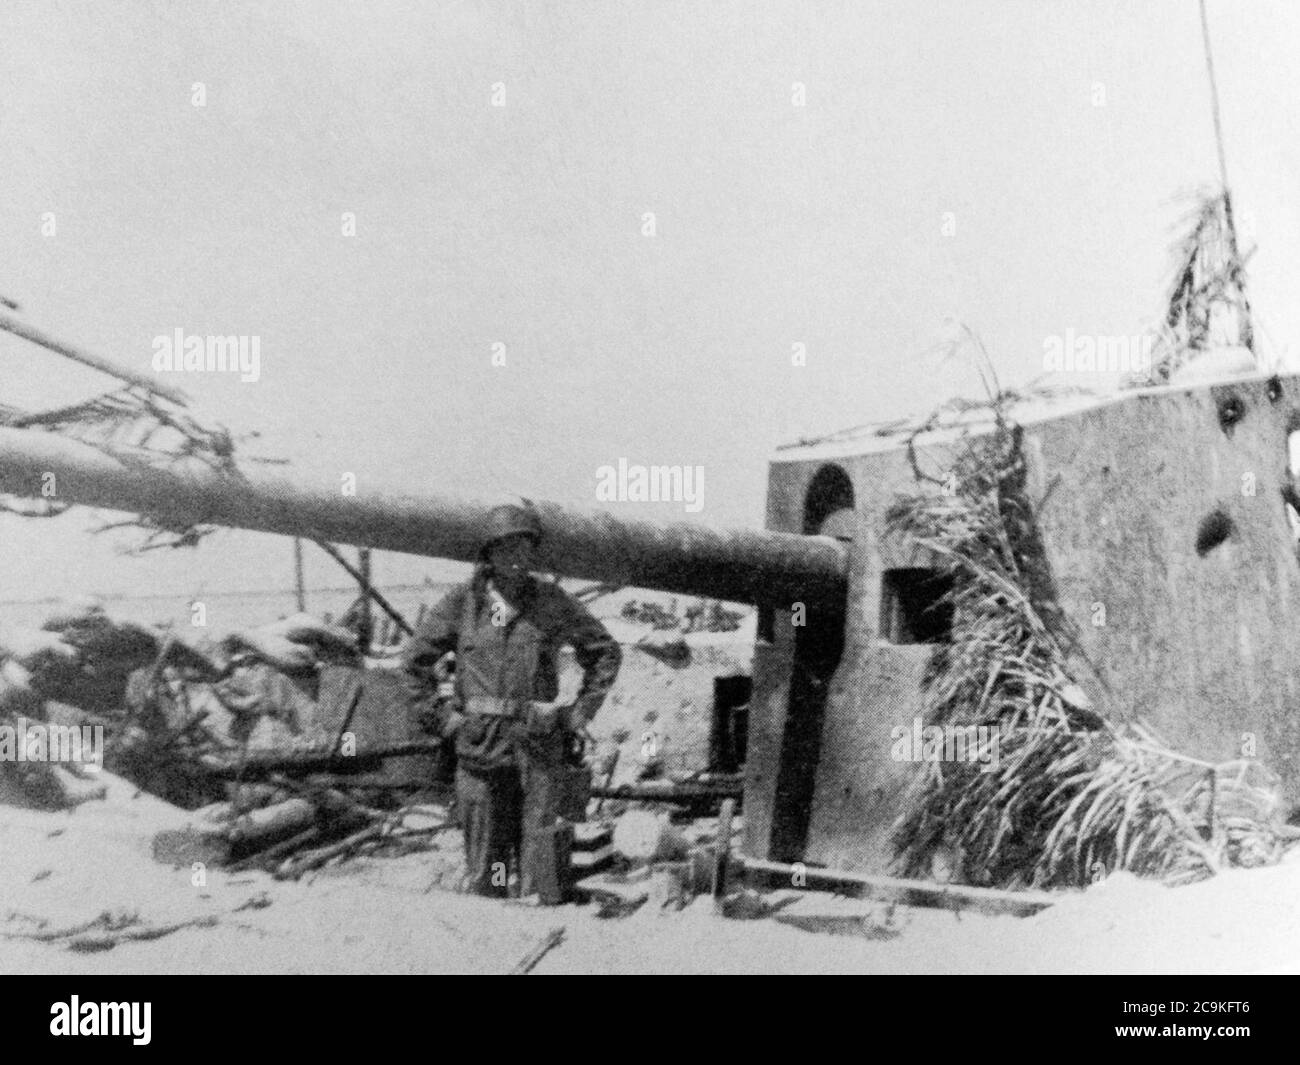 Japanische 14 cm Kanonen auf Tarawa, Pazifischer Ozean, 1943, 2. Weltkrieg. Stockfoto